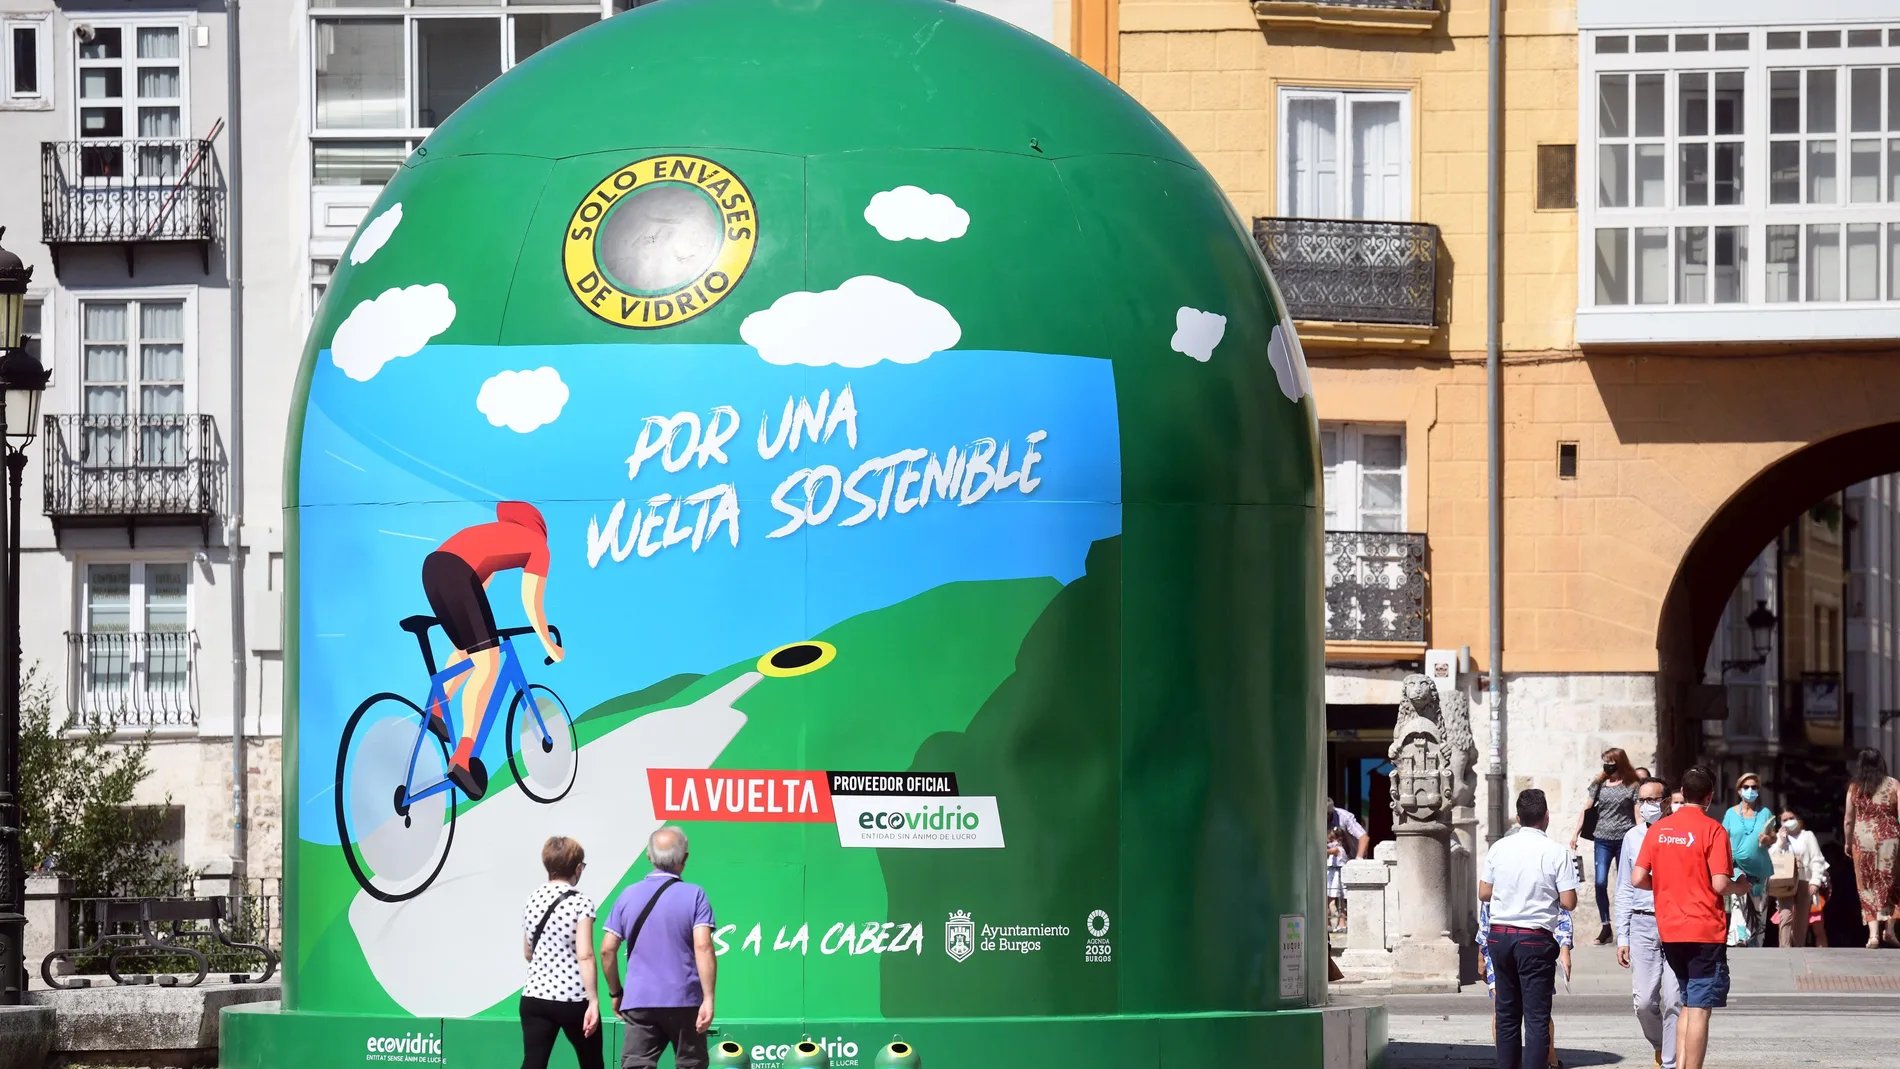 El ayuntamiento de Burgos, Ecovidrio y La Vuelta ciclista a España inauguran el contenedor más grande del mundo para promover el reciclaje de vidrio durante ''''La Vuelta 21''''.